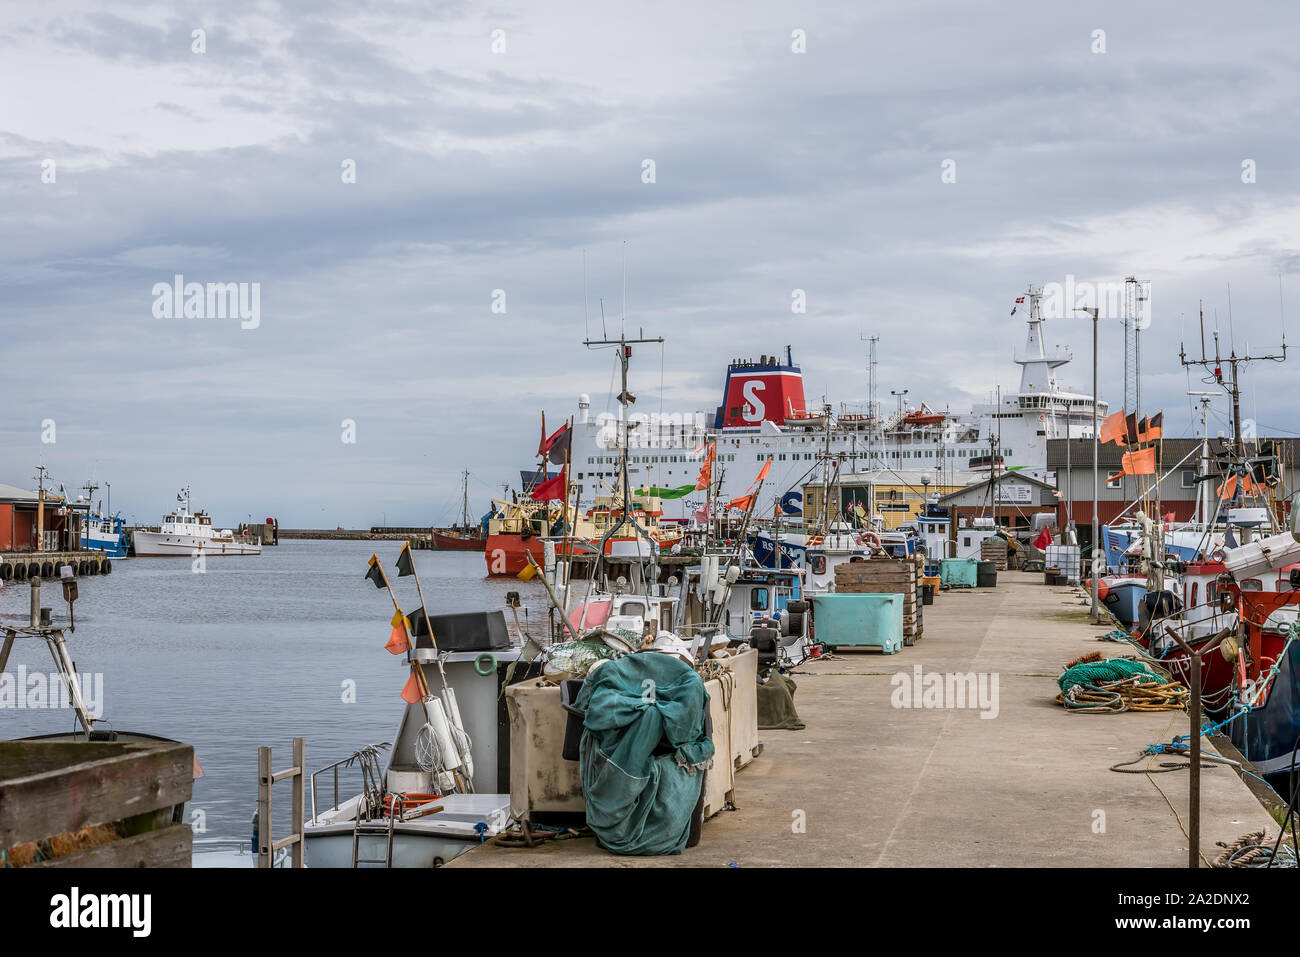 The car ferry Stena Nautika and fishing boats, nets at the jetty of Grenaa, Denmark, September 6, 2019 Stock Photo